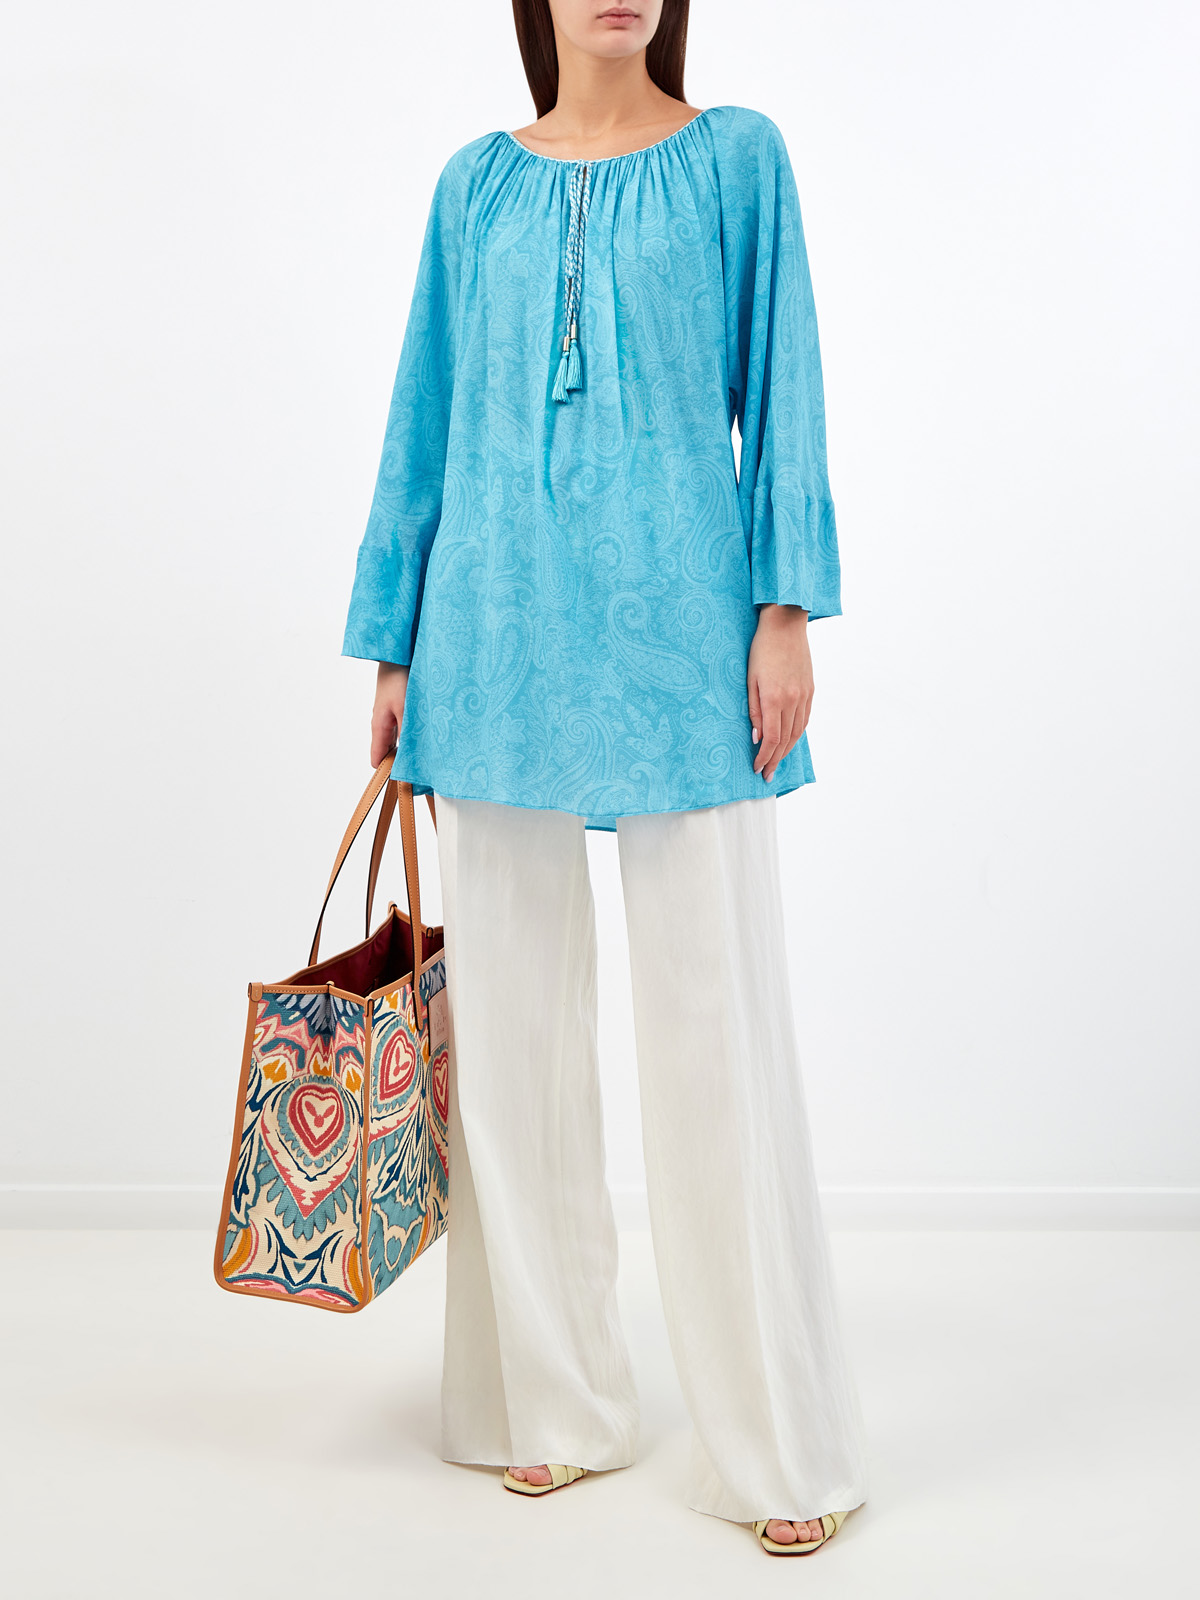 Легкая блуза с плетеными кисточками и принтом в тон ETRO, цвет голубой, размер 40;42;44;46;38 - фото 2